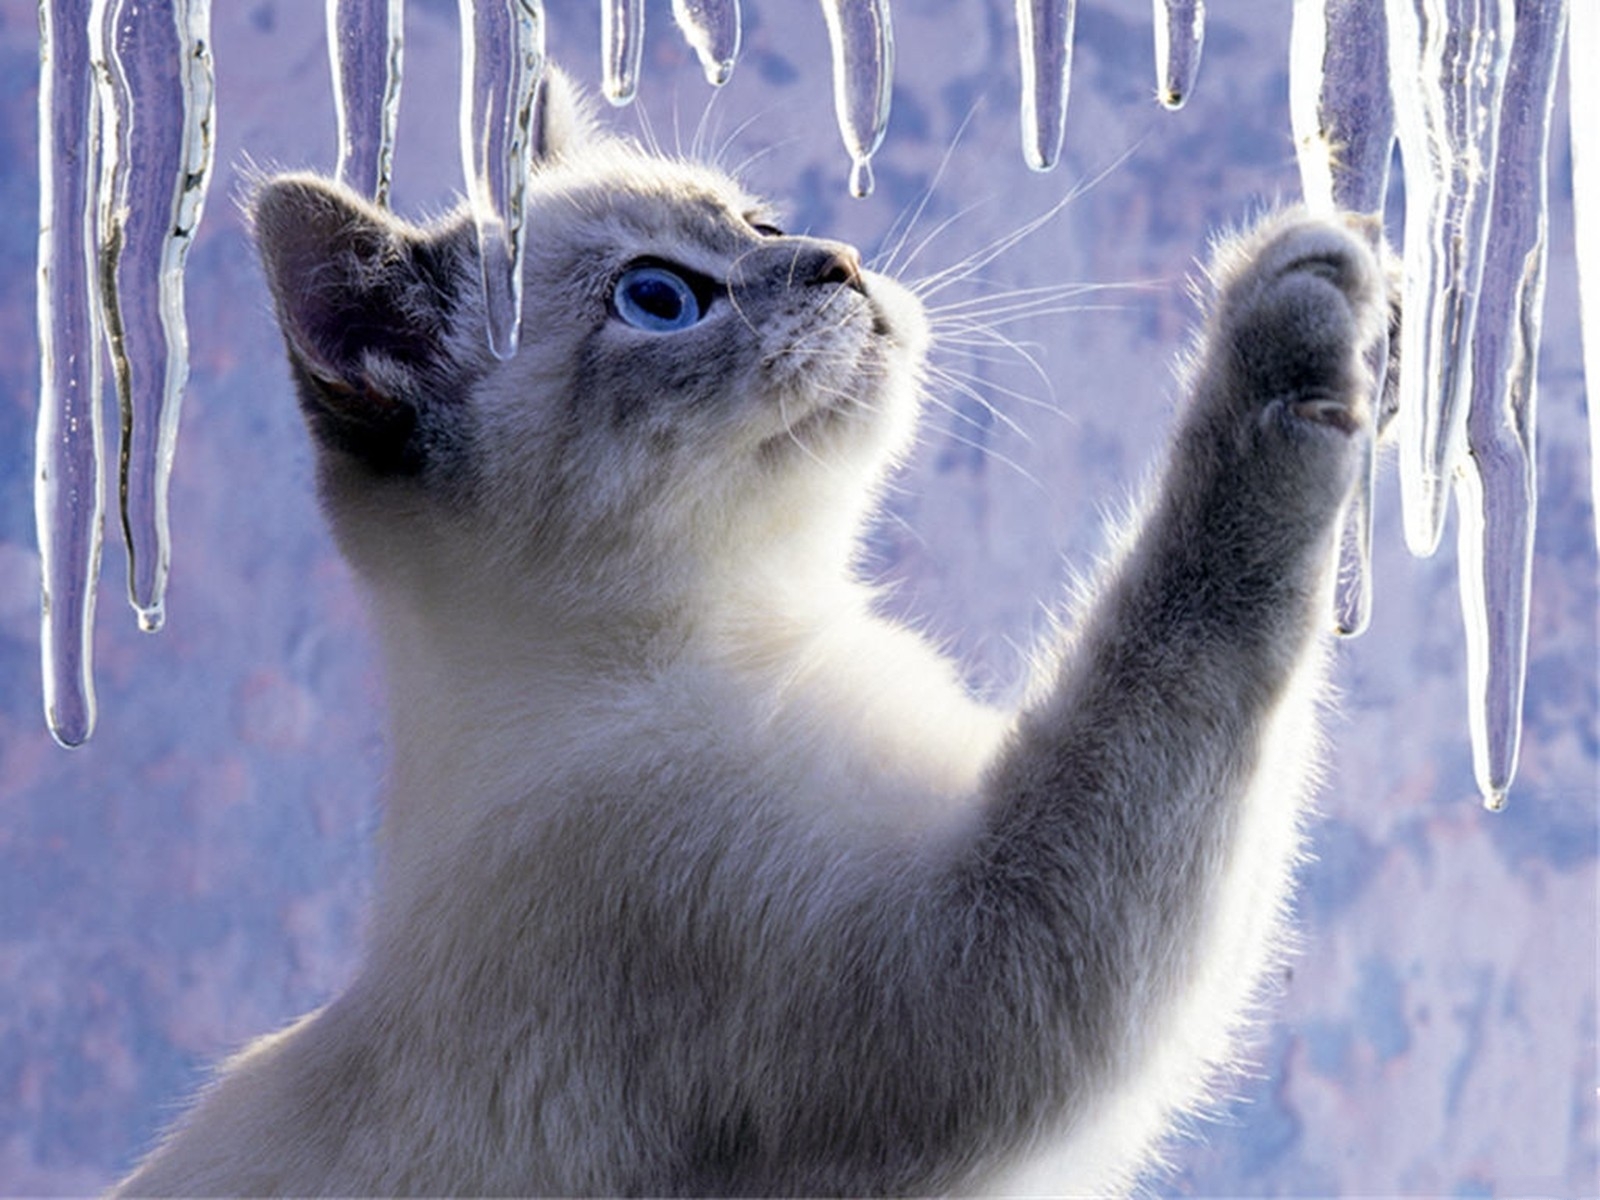 ice-cat-cats-31471539-1600-1200.jpg